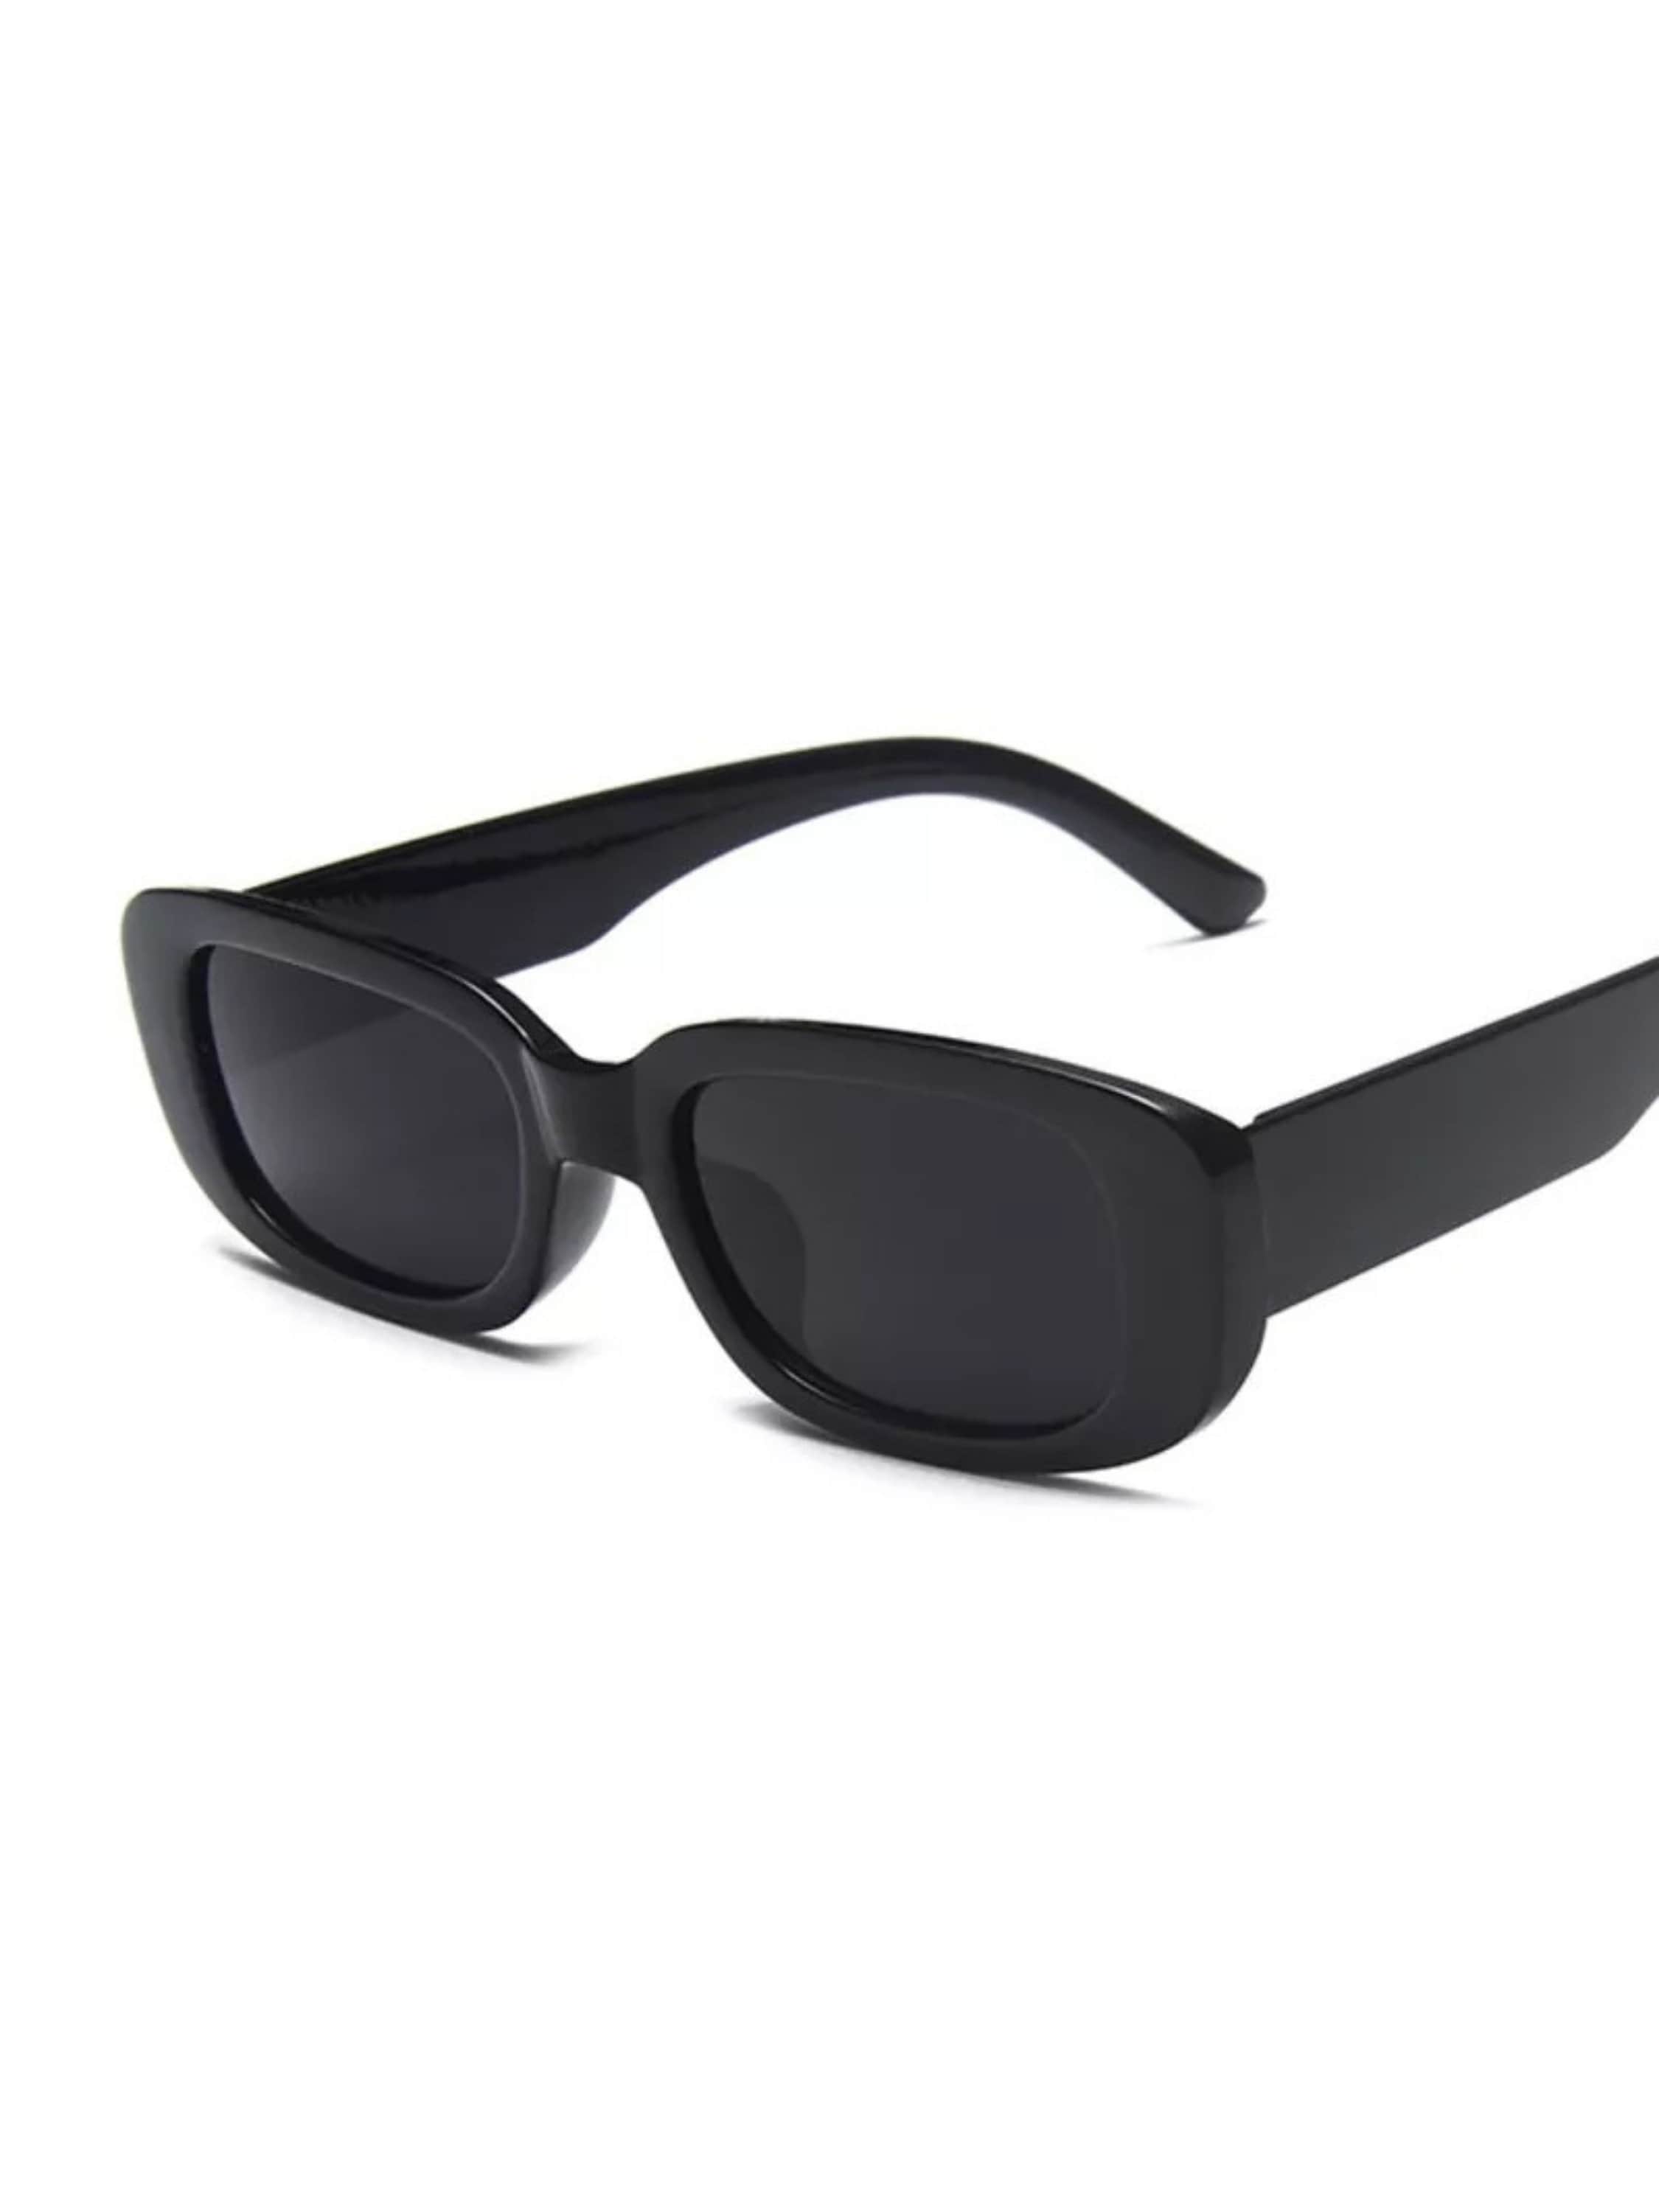 OFF-WHITE Virgil Square Frame Sunglasses Black White Grey (FW21)OFF-WHITE  Virgil Square Frame Sunglasses Black White Grey (FW21) - OFour